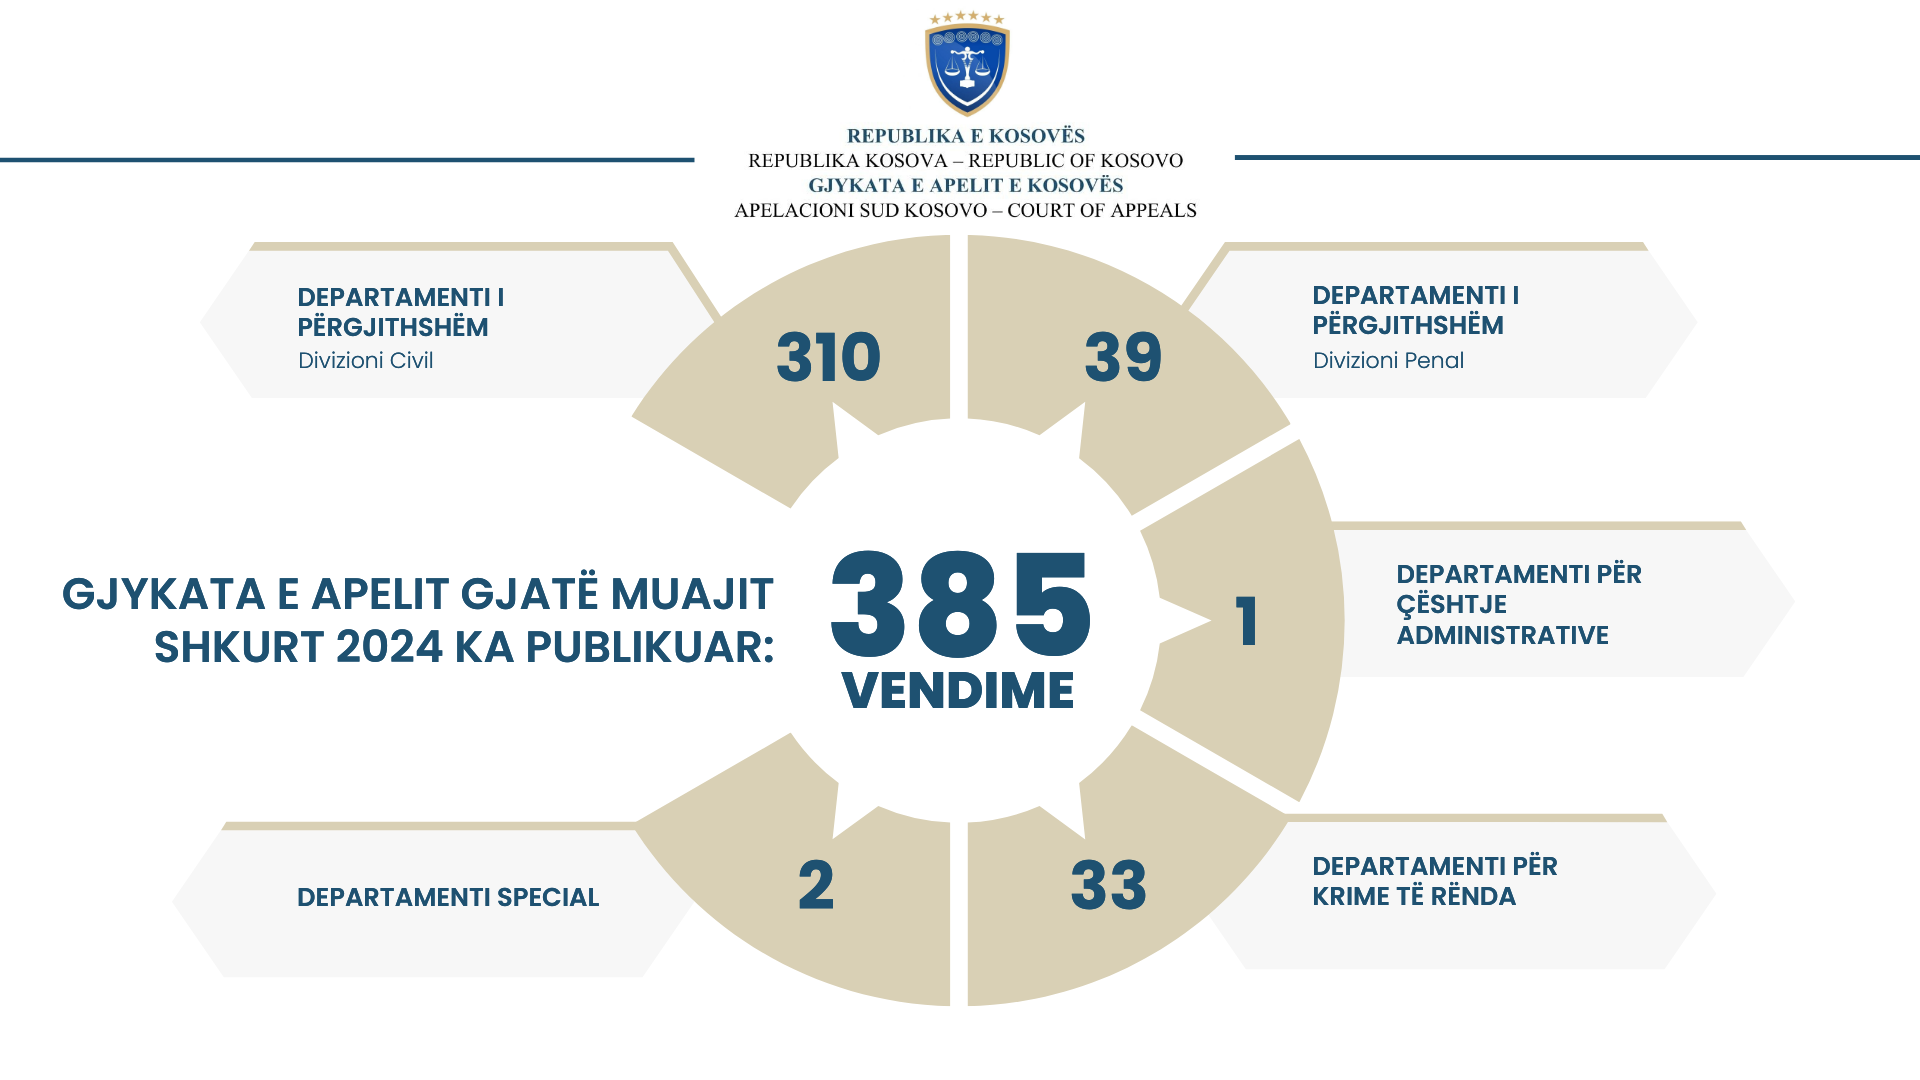 Apelacioni sud Kosova jeu toku meseca februara  objavio 385 odluka